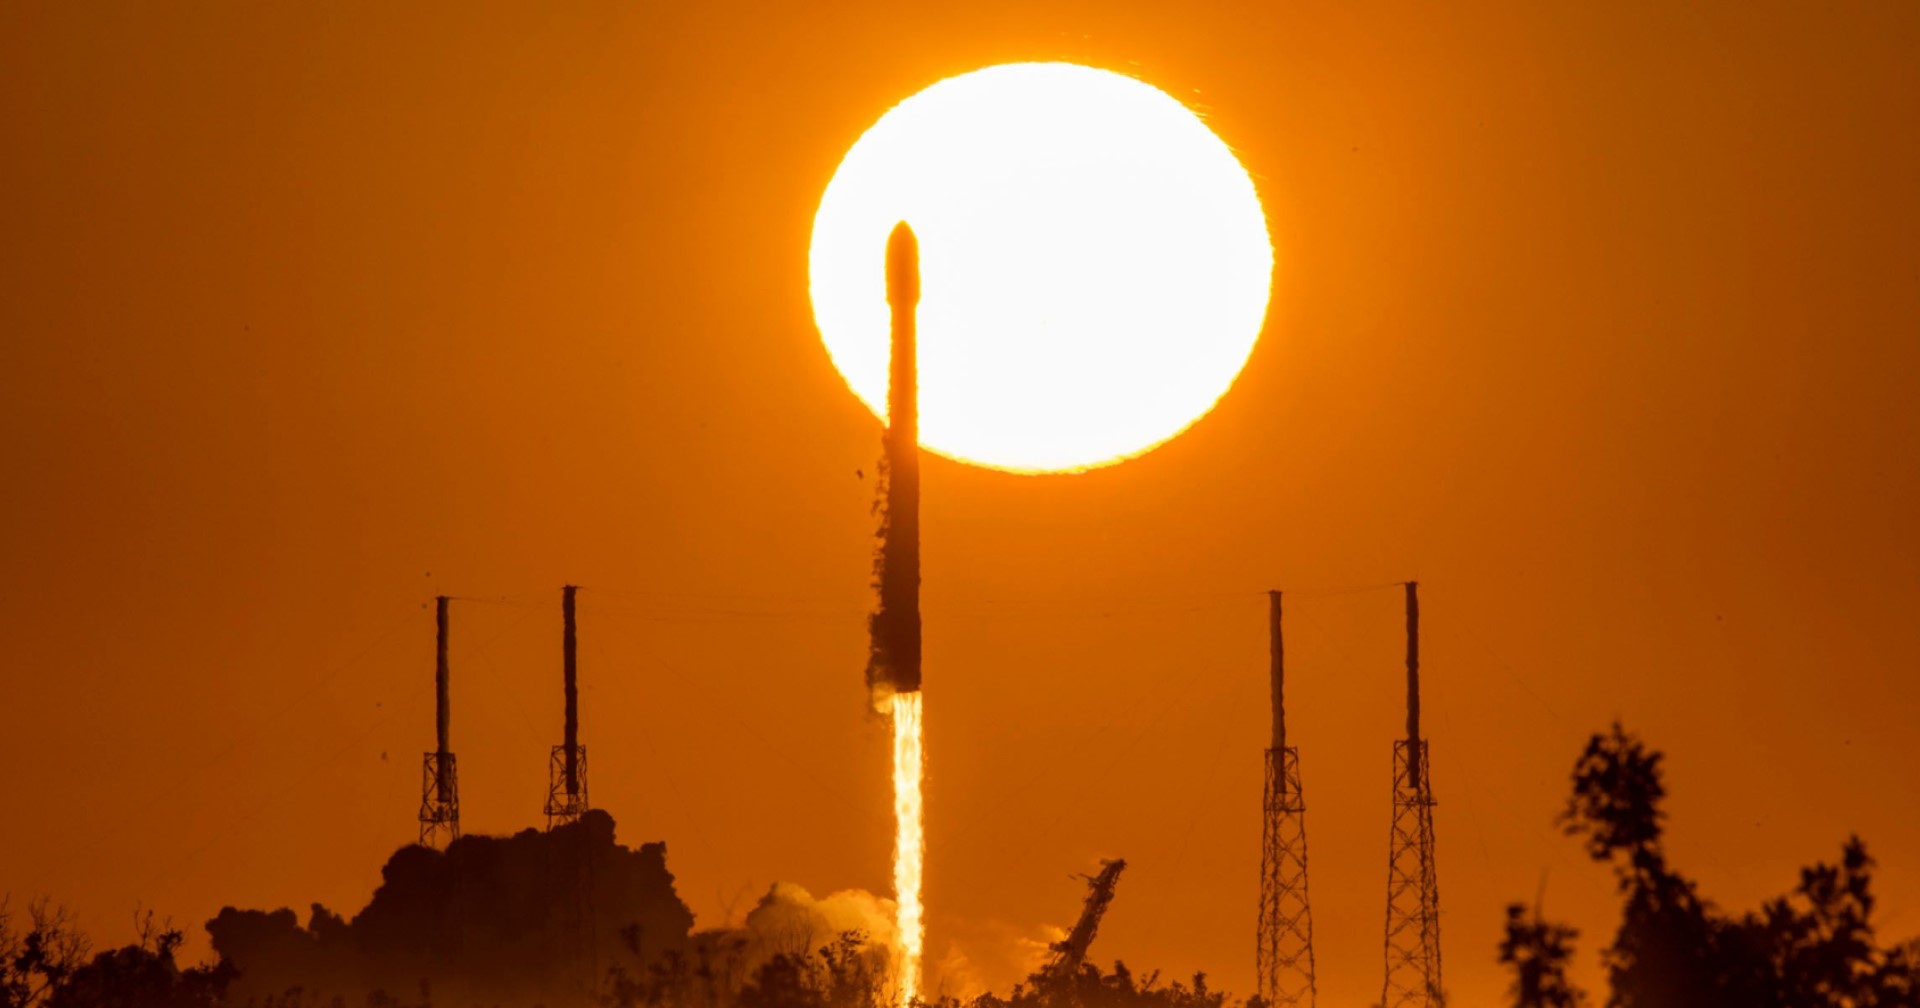 SpaceX ปล่อยดาวเทียมนำทางให้กับกองทัพอวกาศสหรัฐฯ ในภารกิจ GPS III Space Vehicle 06